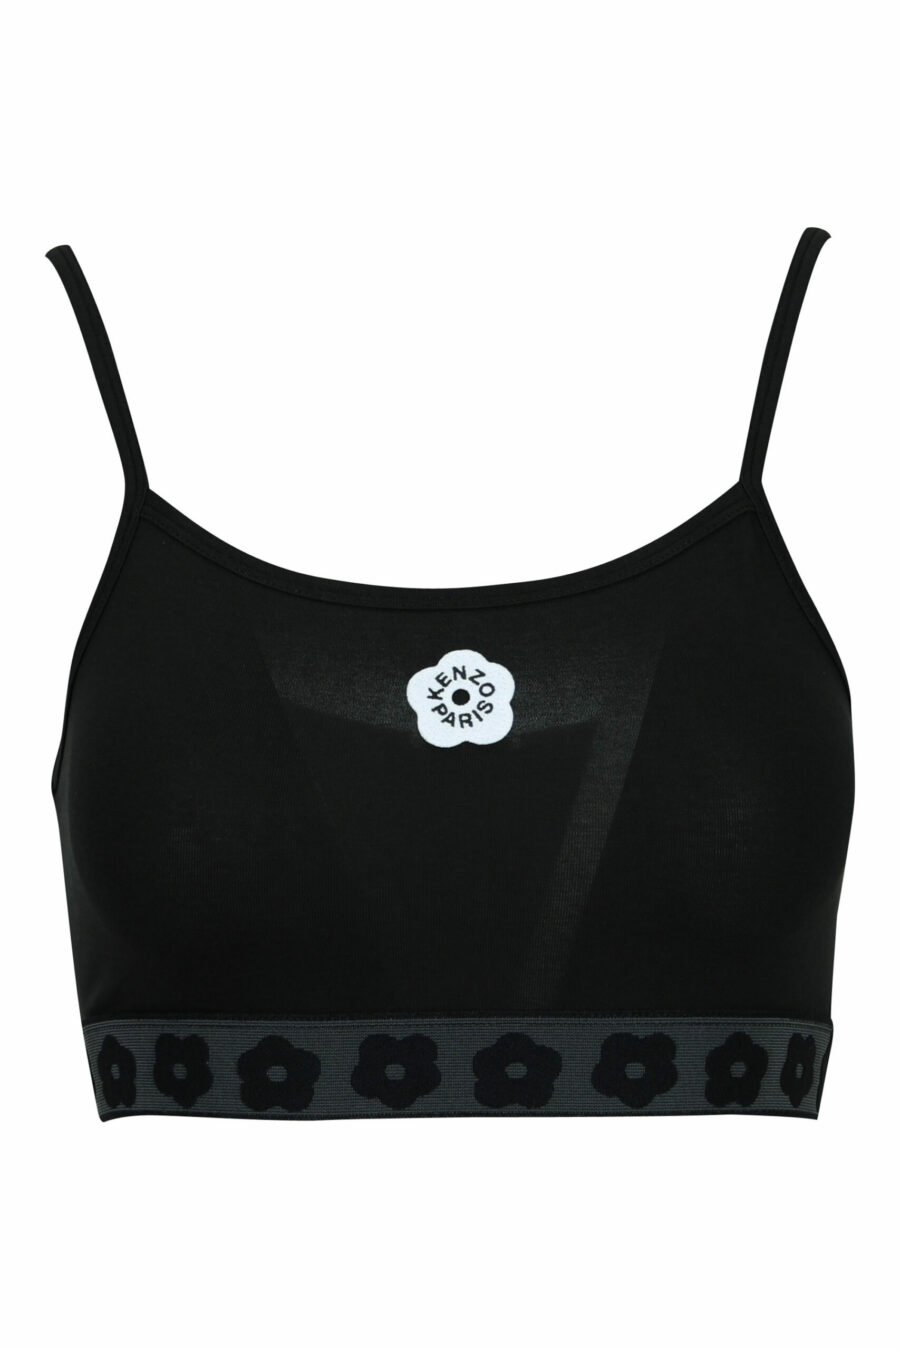 Haut noir avec logo "boke flower" noir - 3612230583405 scaled